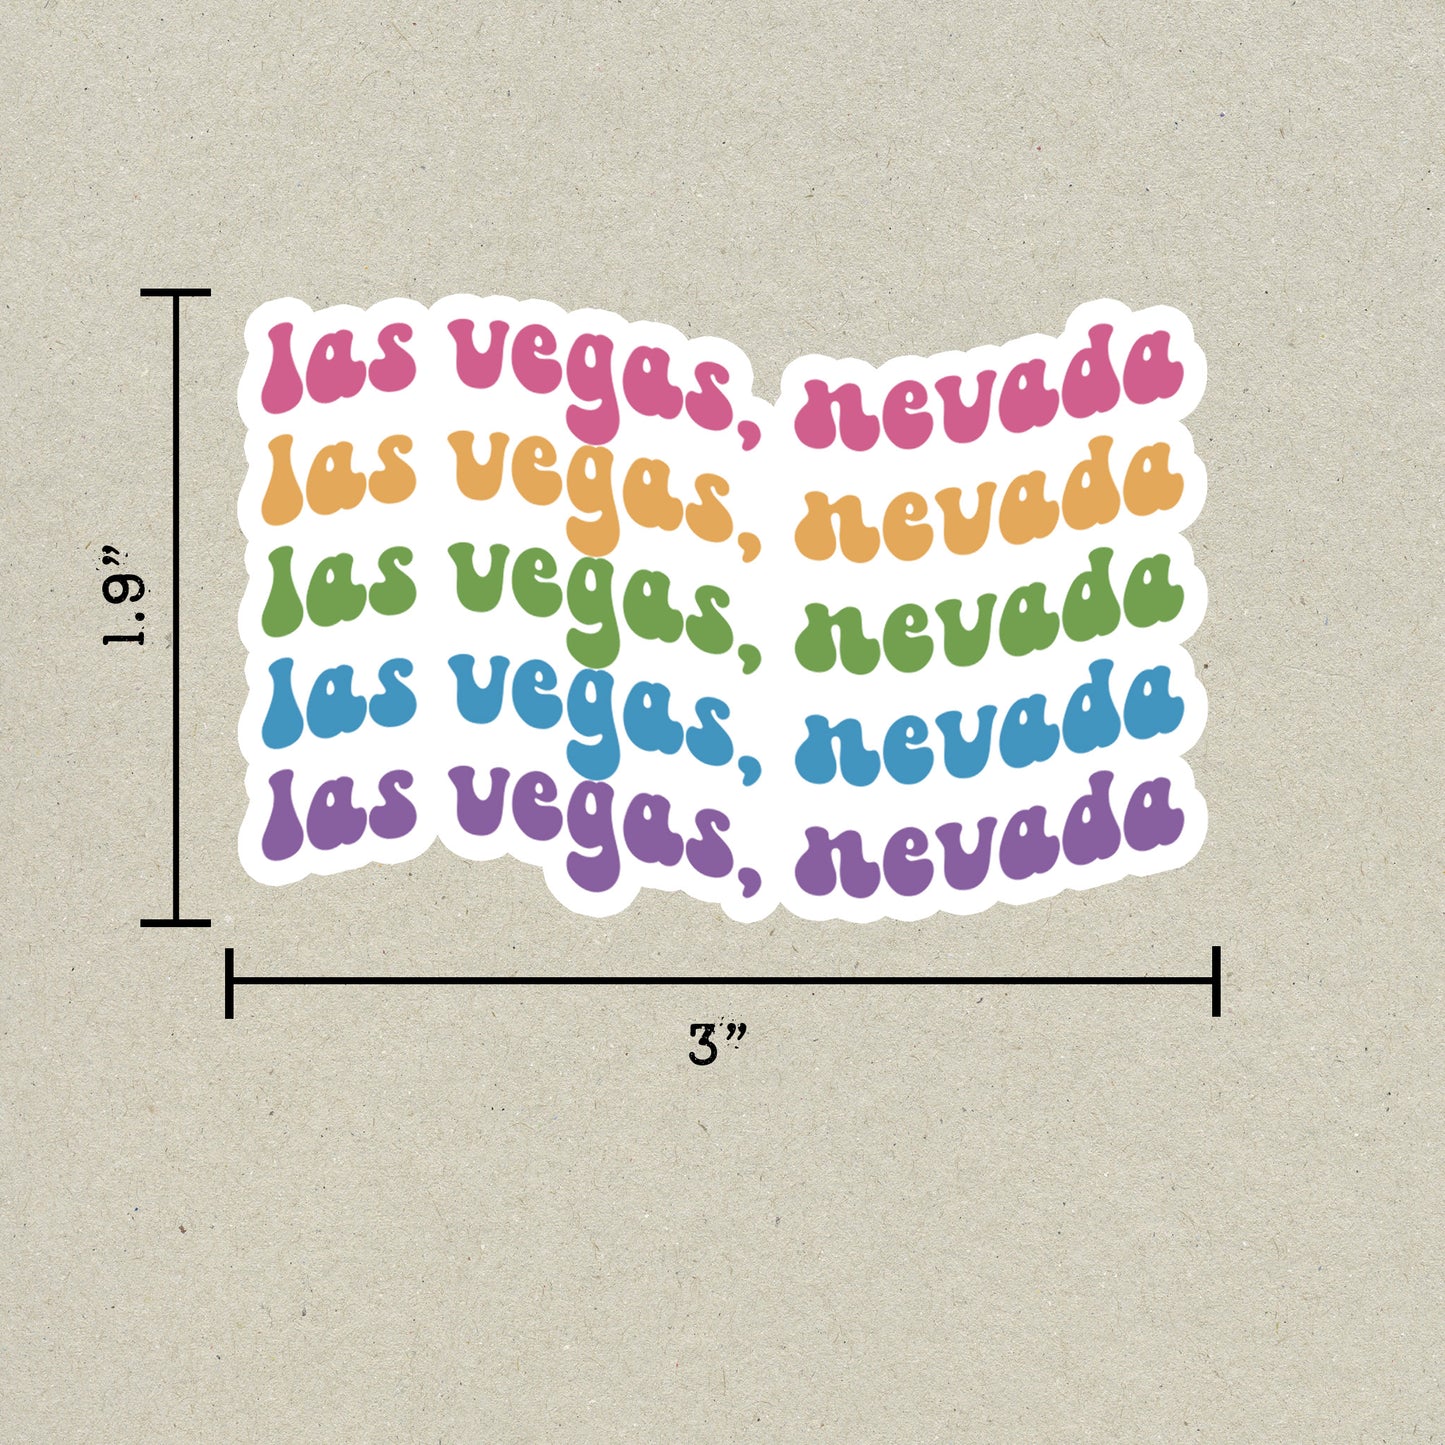 Las Vegas, Nevada Retro Sticker